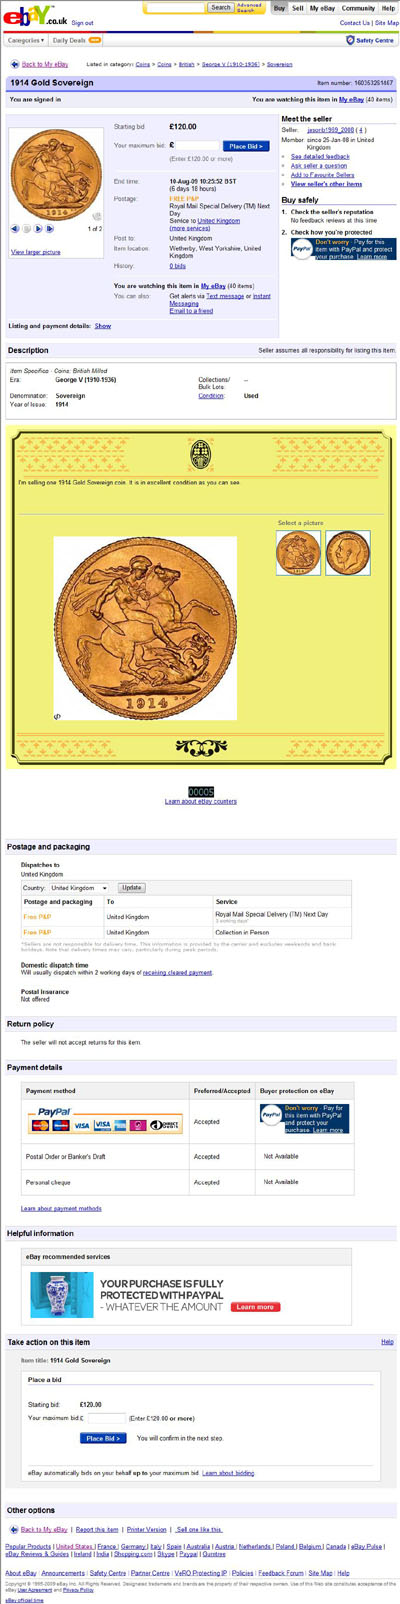 jasonb1969_2008 eBay Listing for 1914 Gold Sovereign